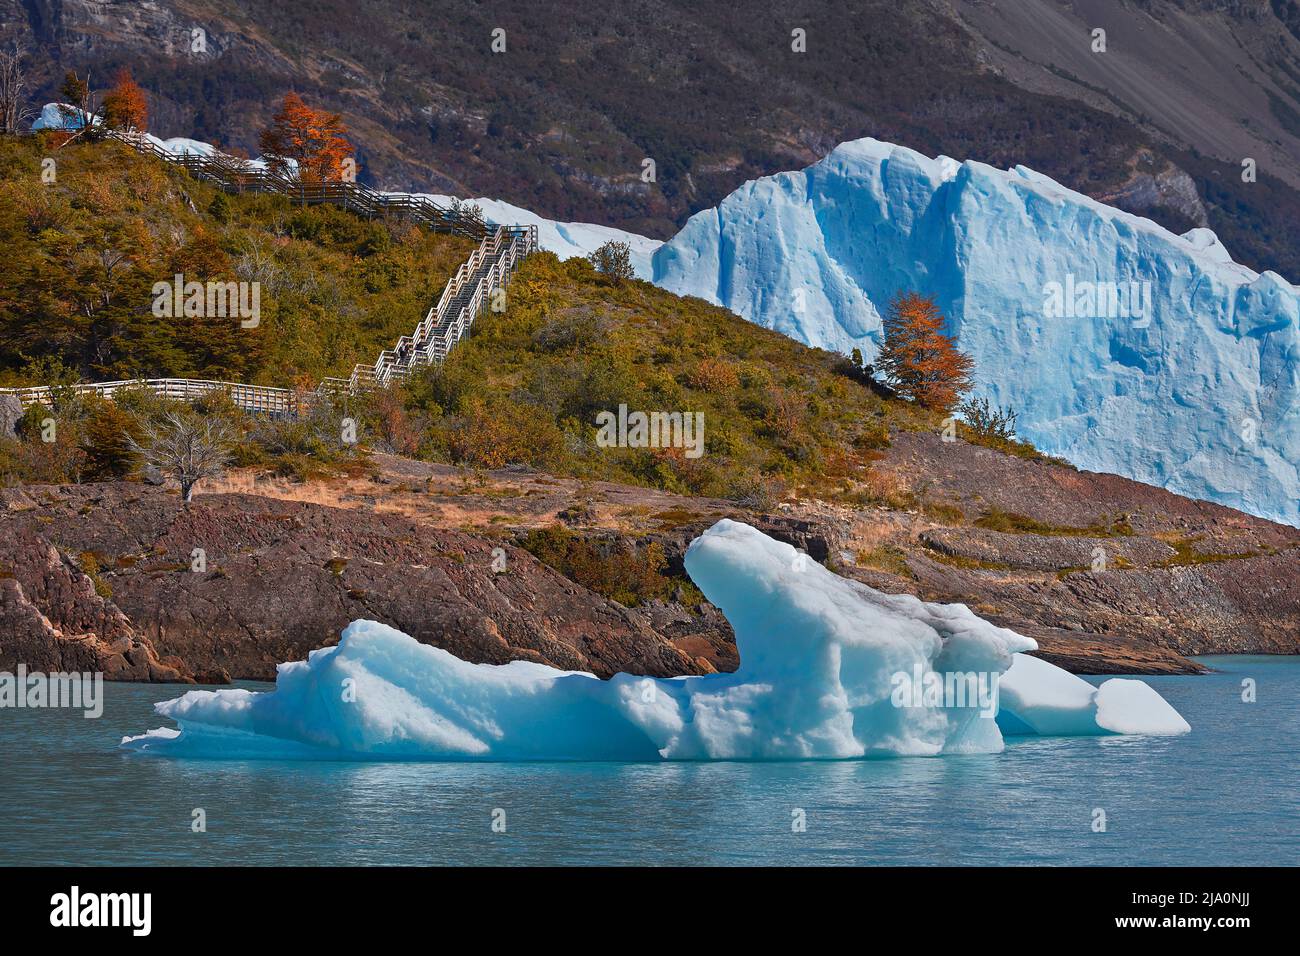 Iceberg, coloridos árboles lengas, y la pared azul helada del Glaciar Perito Moreno en otoño, Parque Nacional Los Glaciares, Santa Cruz, Argentina. Foto de stock